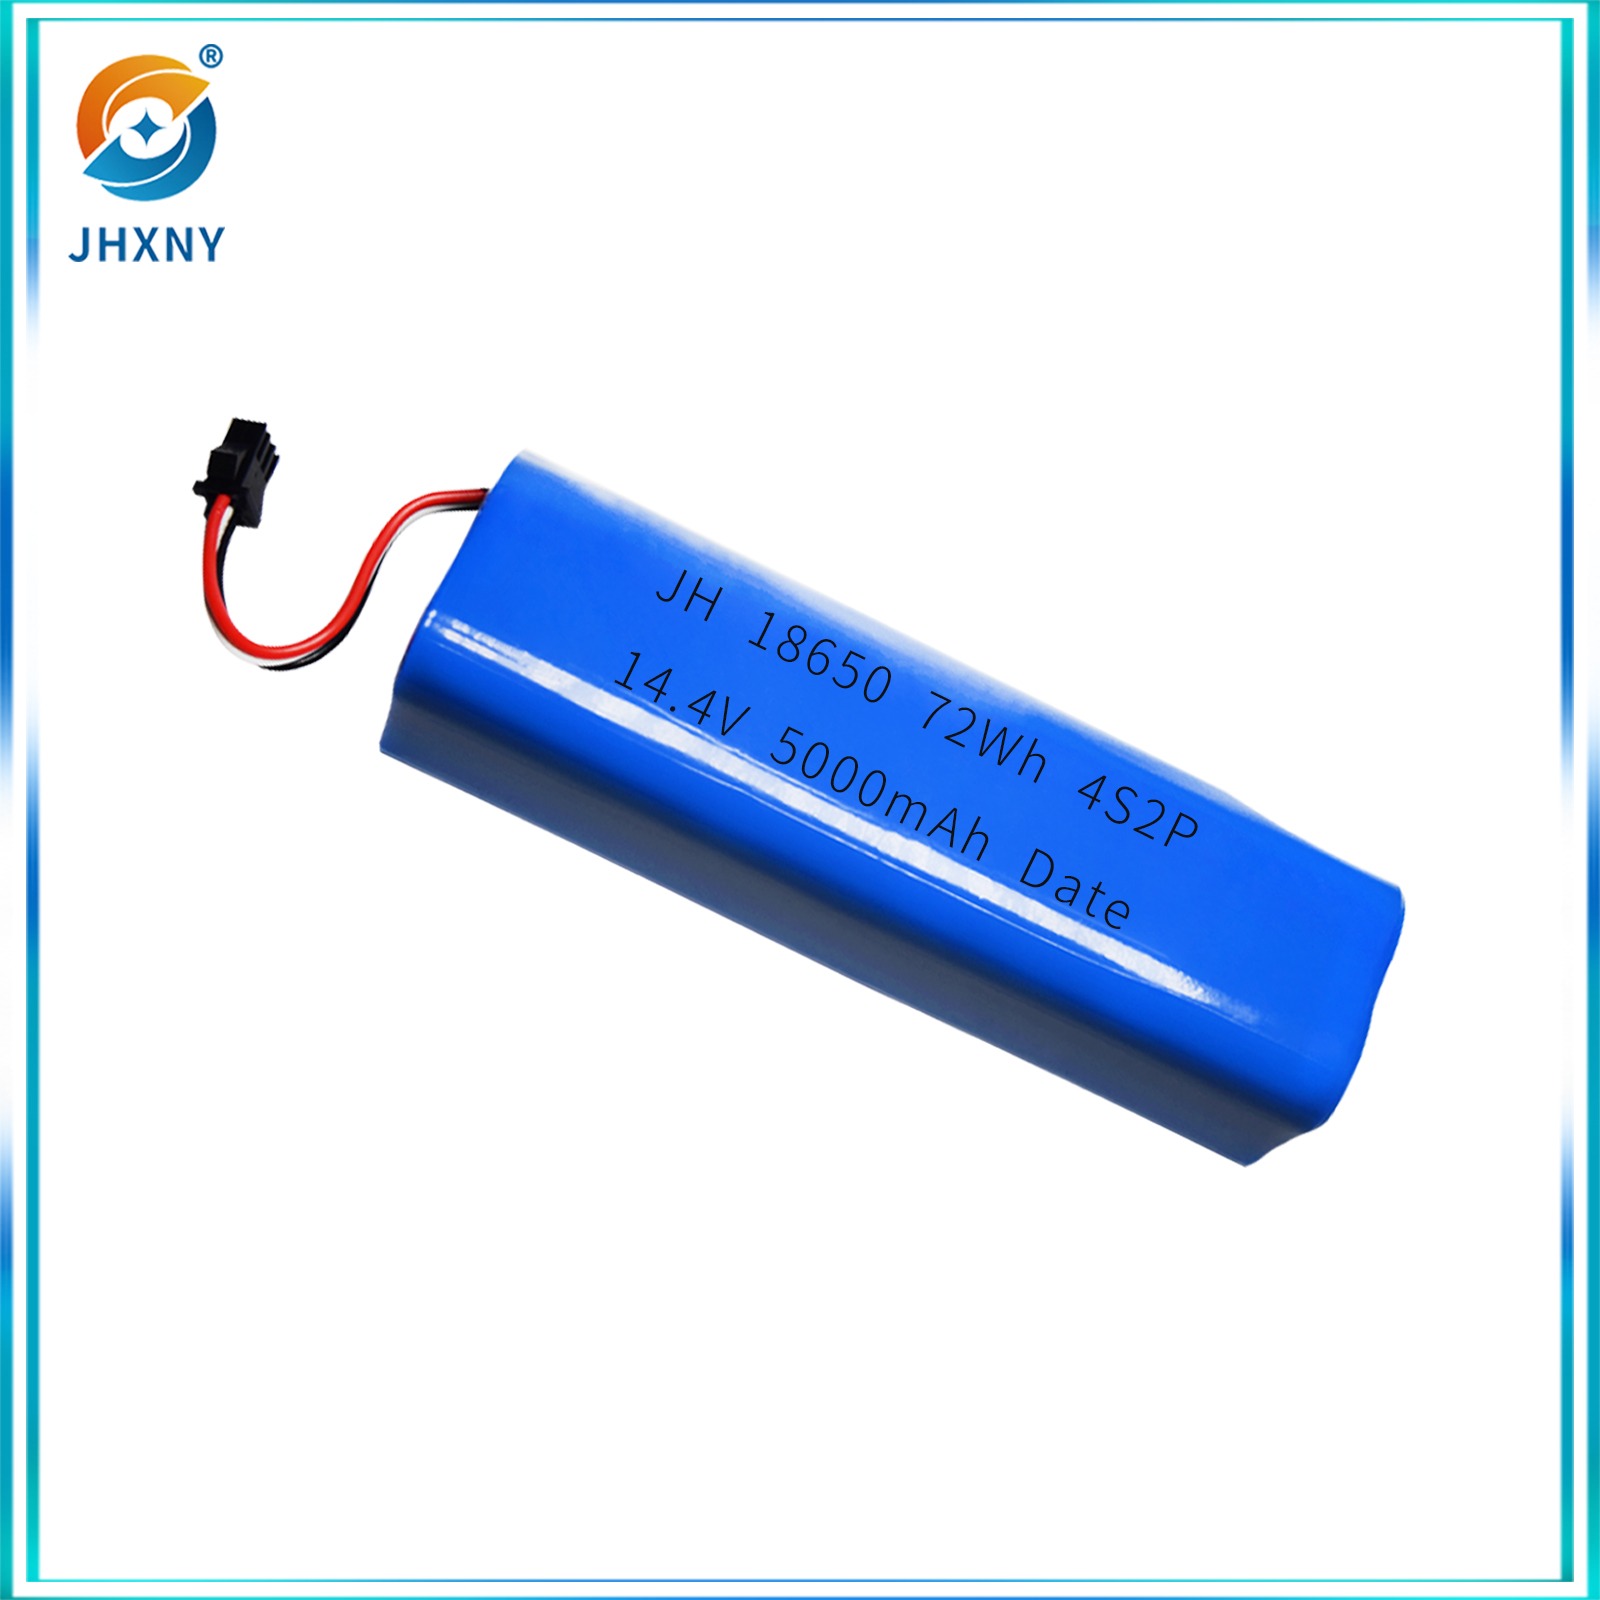 مضخة كهربائية تعمل بالمكنسة كهربائية تعمل بالمكنسة لإزالة العث، JH186514.4 V5200MAH.